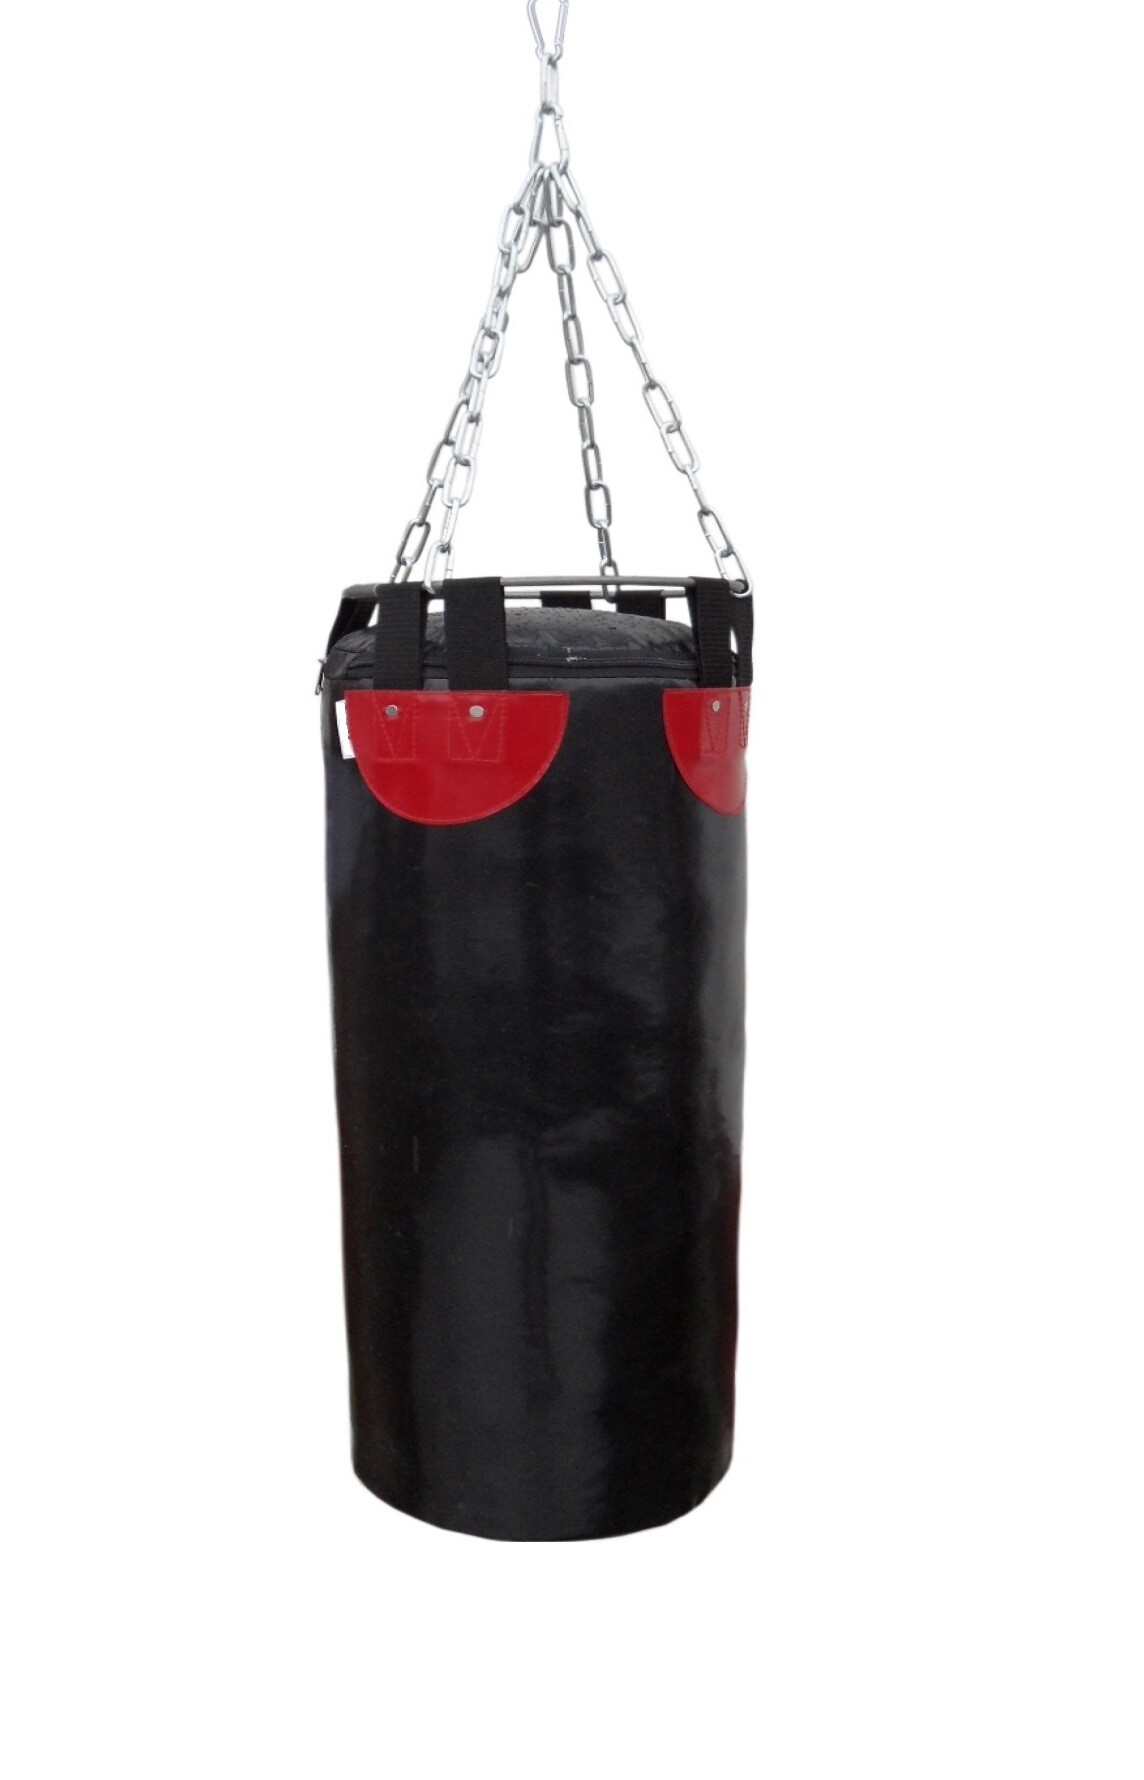 Boxing bag SANRO 90/28 cm, 21 kg black 01262 Boxing, karate pirkti  internetu, prekė pristatoma nurodytu adresu, užsakykite, parduotuvė Rygoje